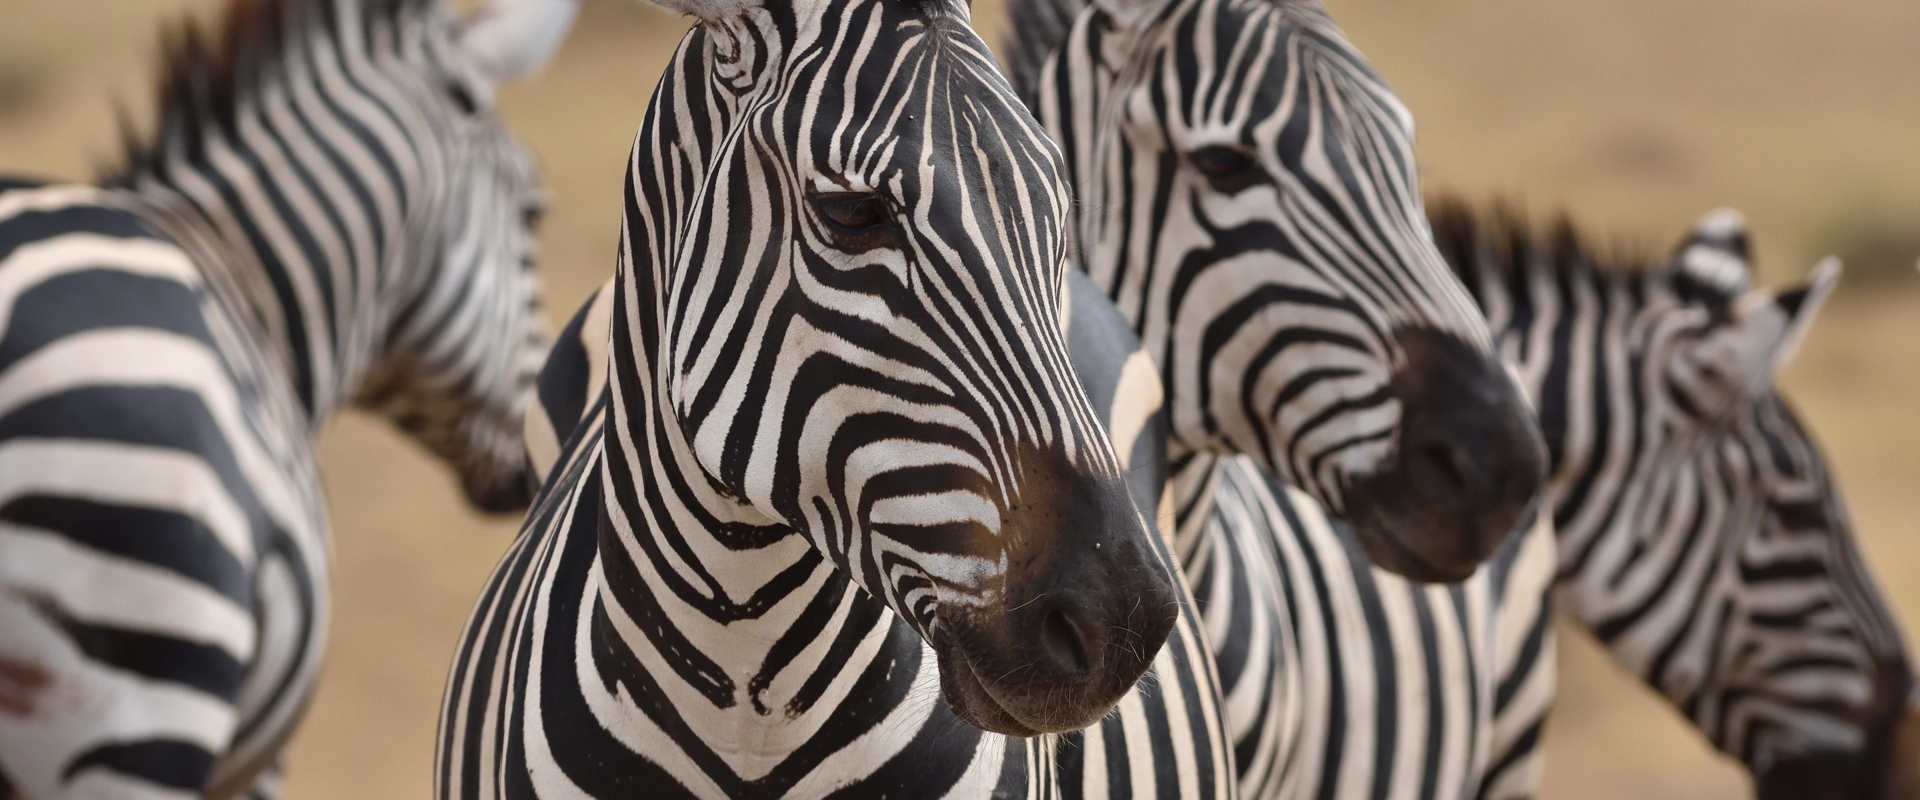 safari luxe tanzanie zebre